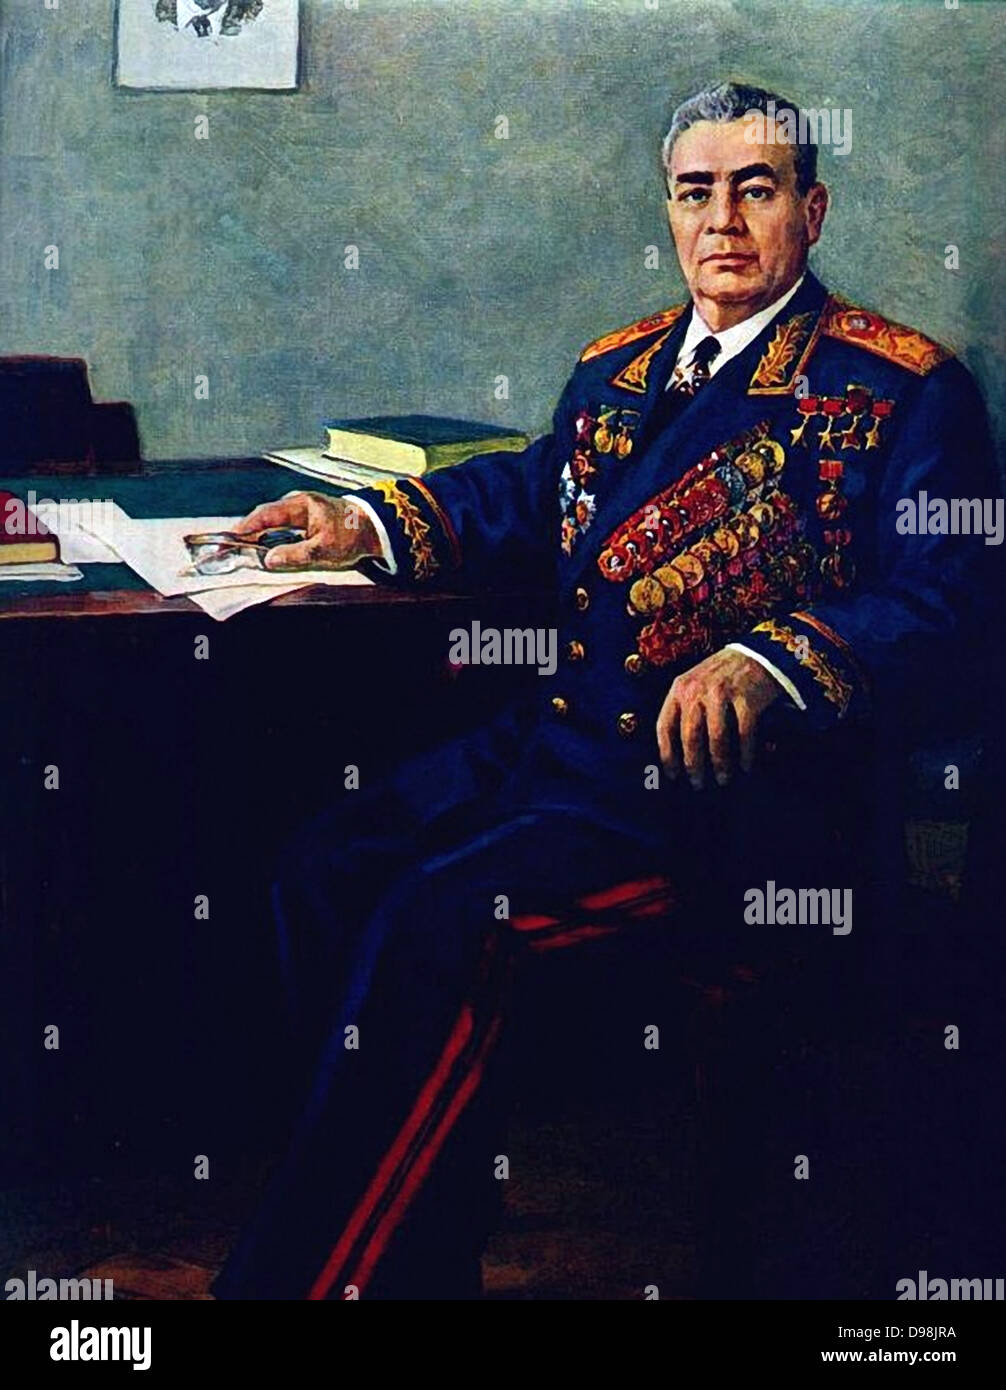 Leonid Brezhnev Ilyich nel 1980. (1906 - 10 novembre 1982). Russia sovietica più durante la Guerra Fredda. Uomo politico sovietico. Il segretario del comitato centrale (CC) del Partito Comunista dell'Unione Sovietica (CPSU), presiede il paese dal 1964 fino alla sua morte nel 1982. Foto Stock